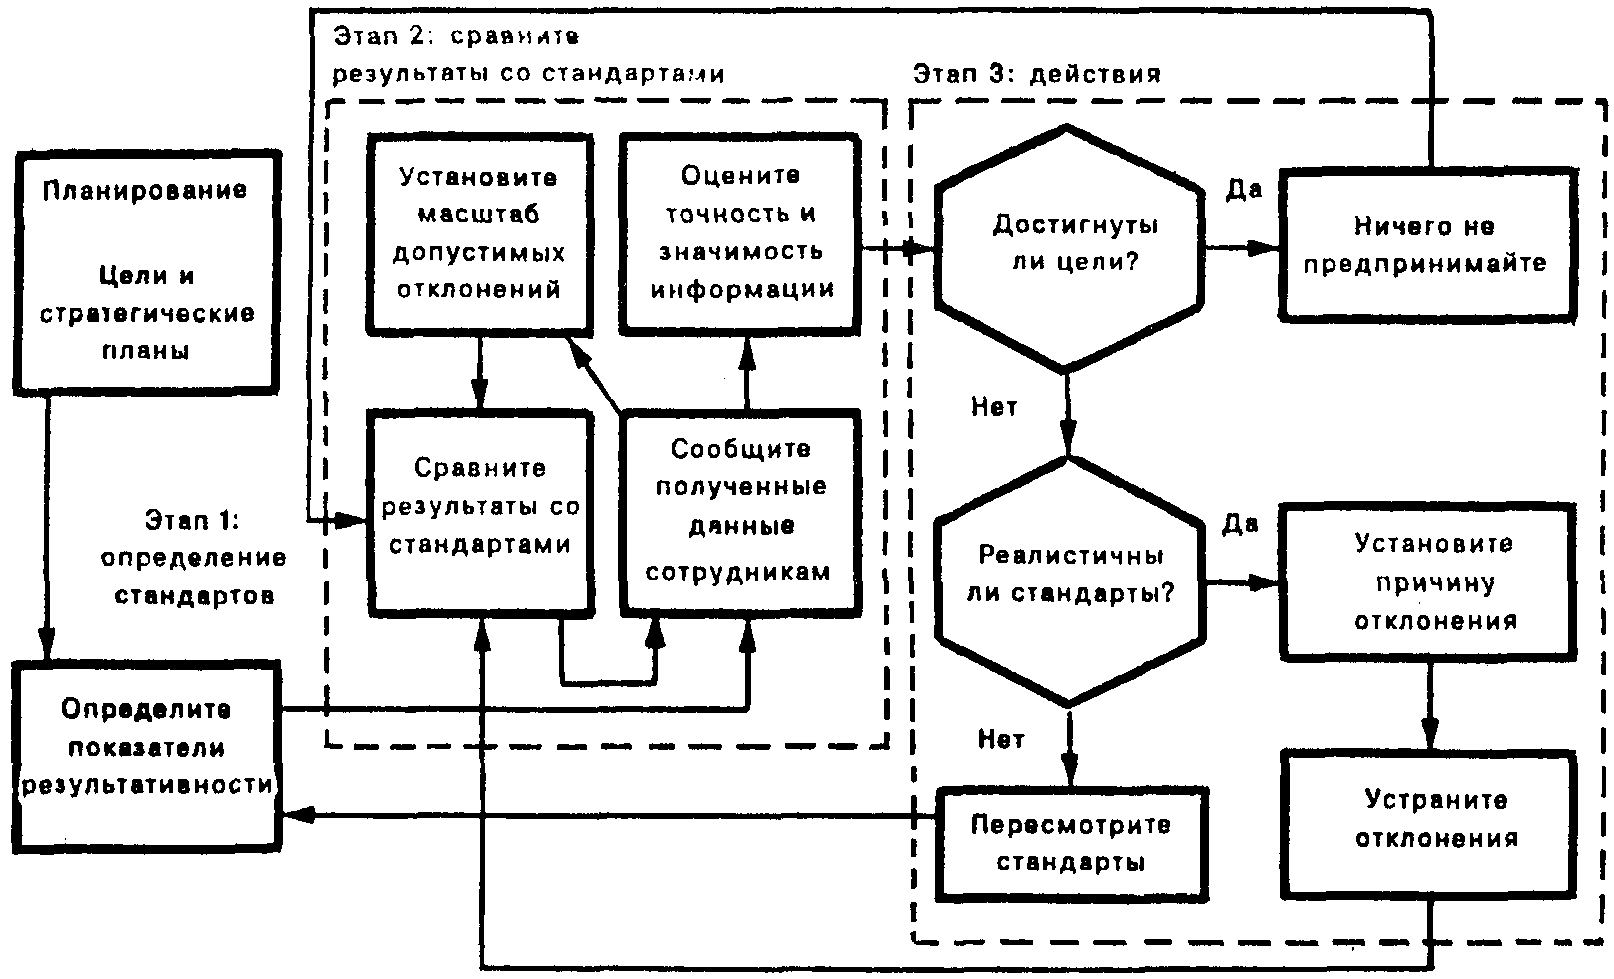 Модель системы контроля